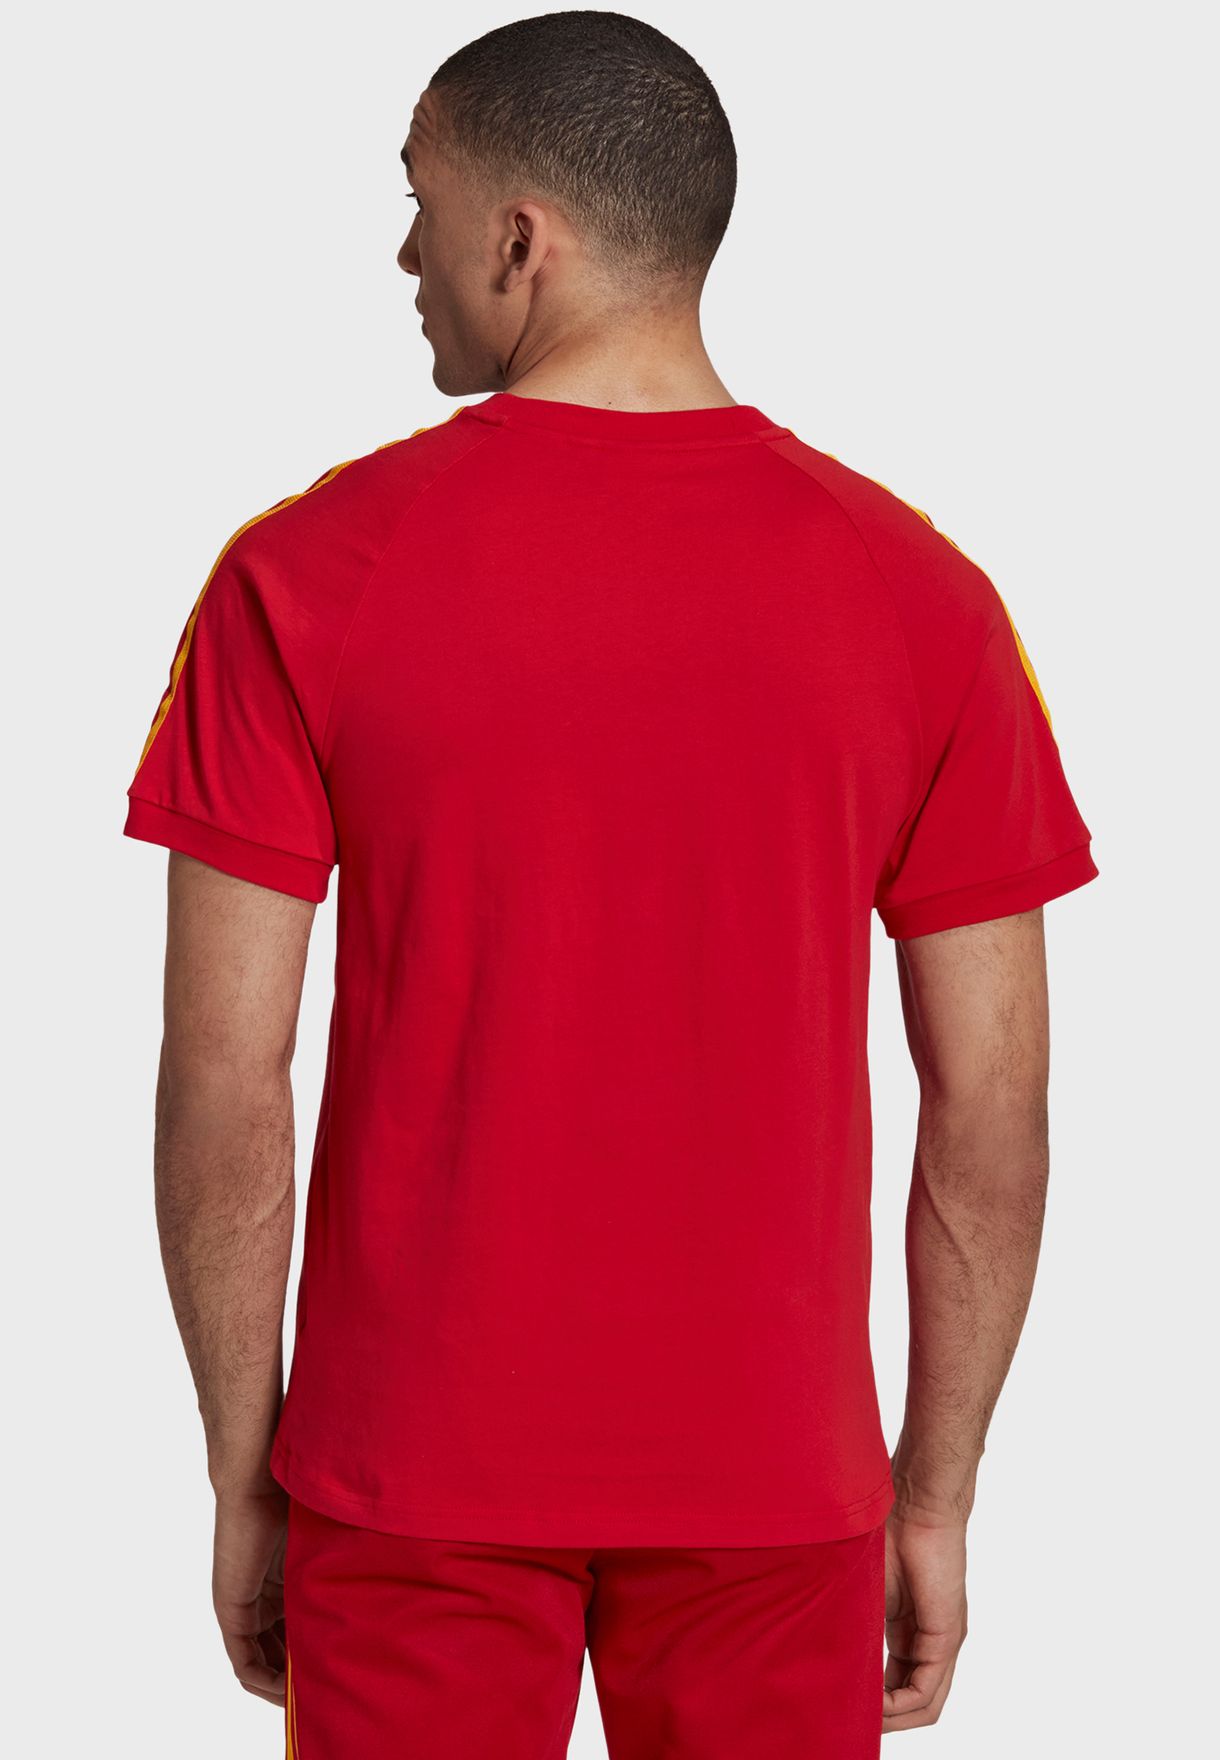 Firebird Nations T-Shirt